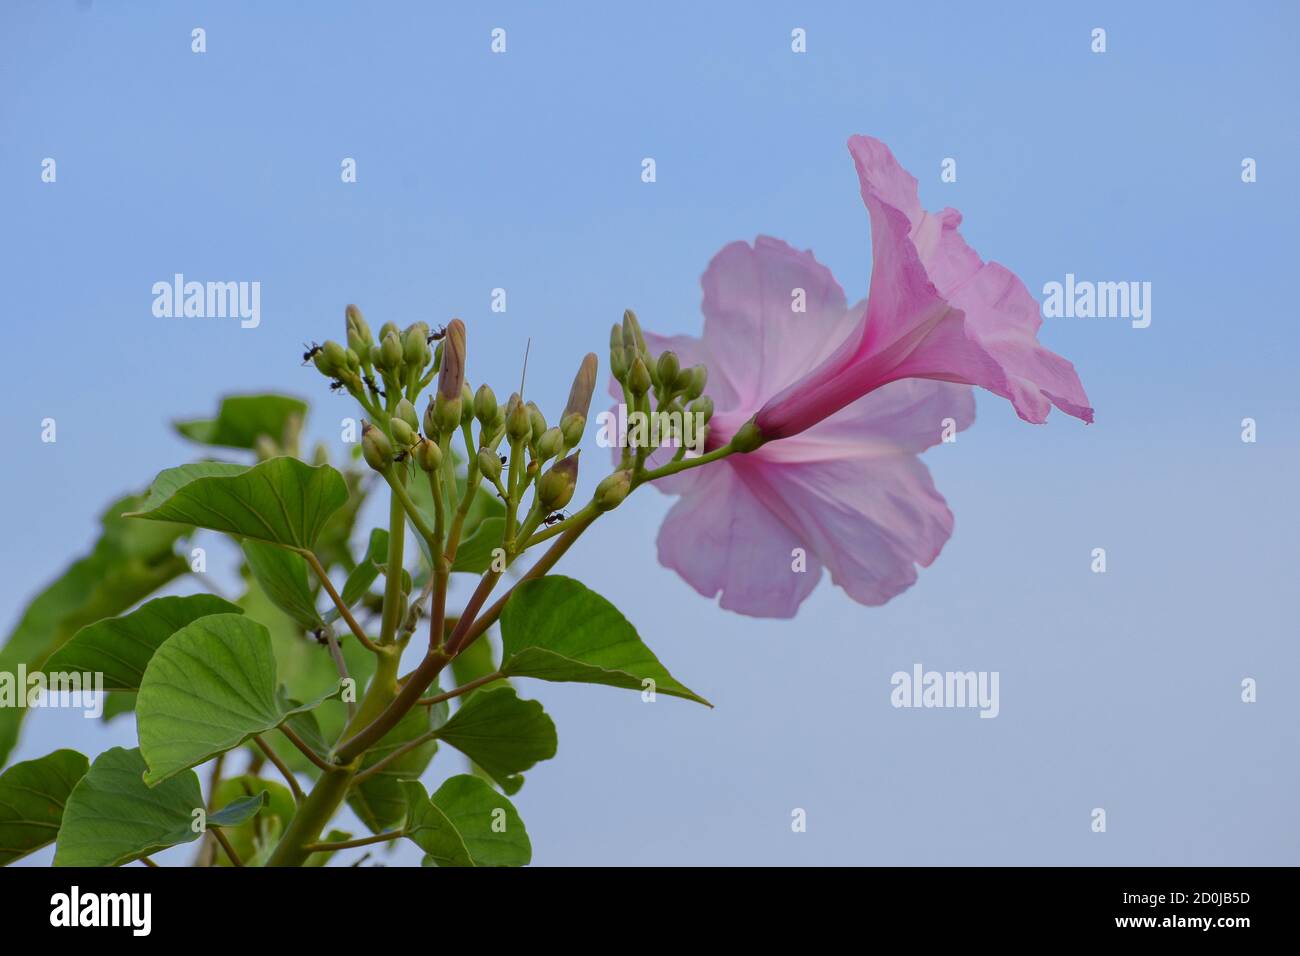 Schöne frische rosa Morgenruhm (ipomoea carnea) Pflanze mit Blüten und Knospen in blauen Himmel Hintergrund, Heilpflanze, giftig giftig Stockfoto